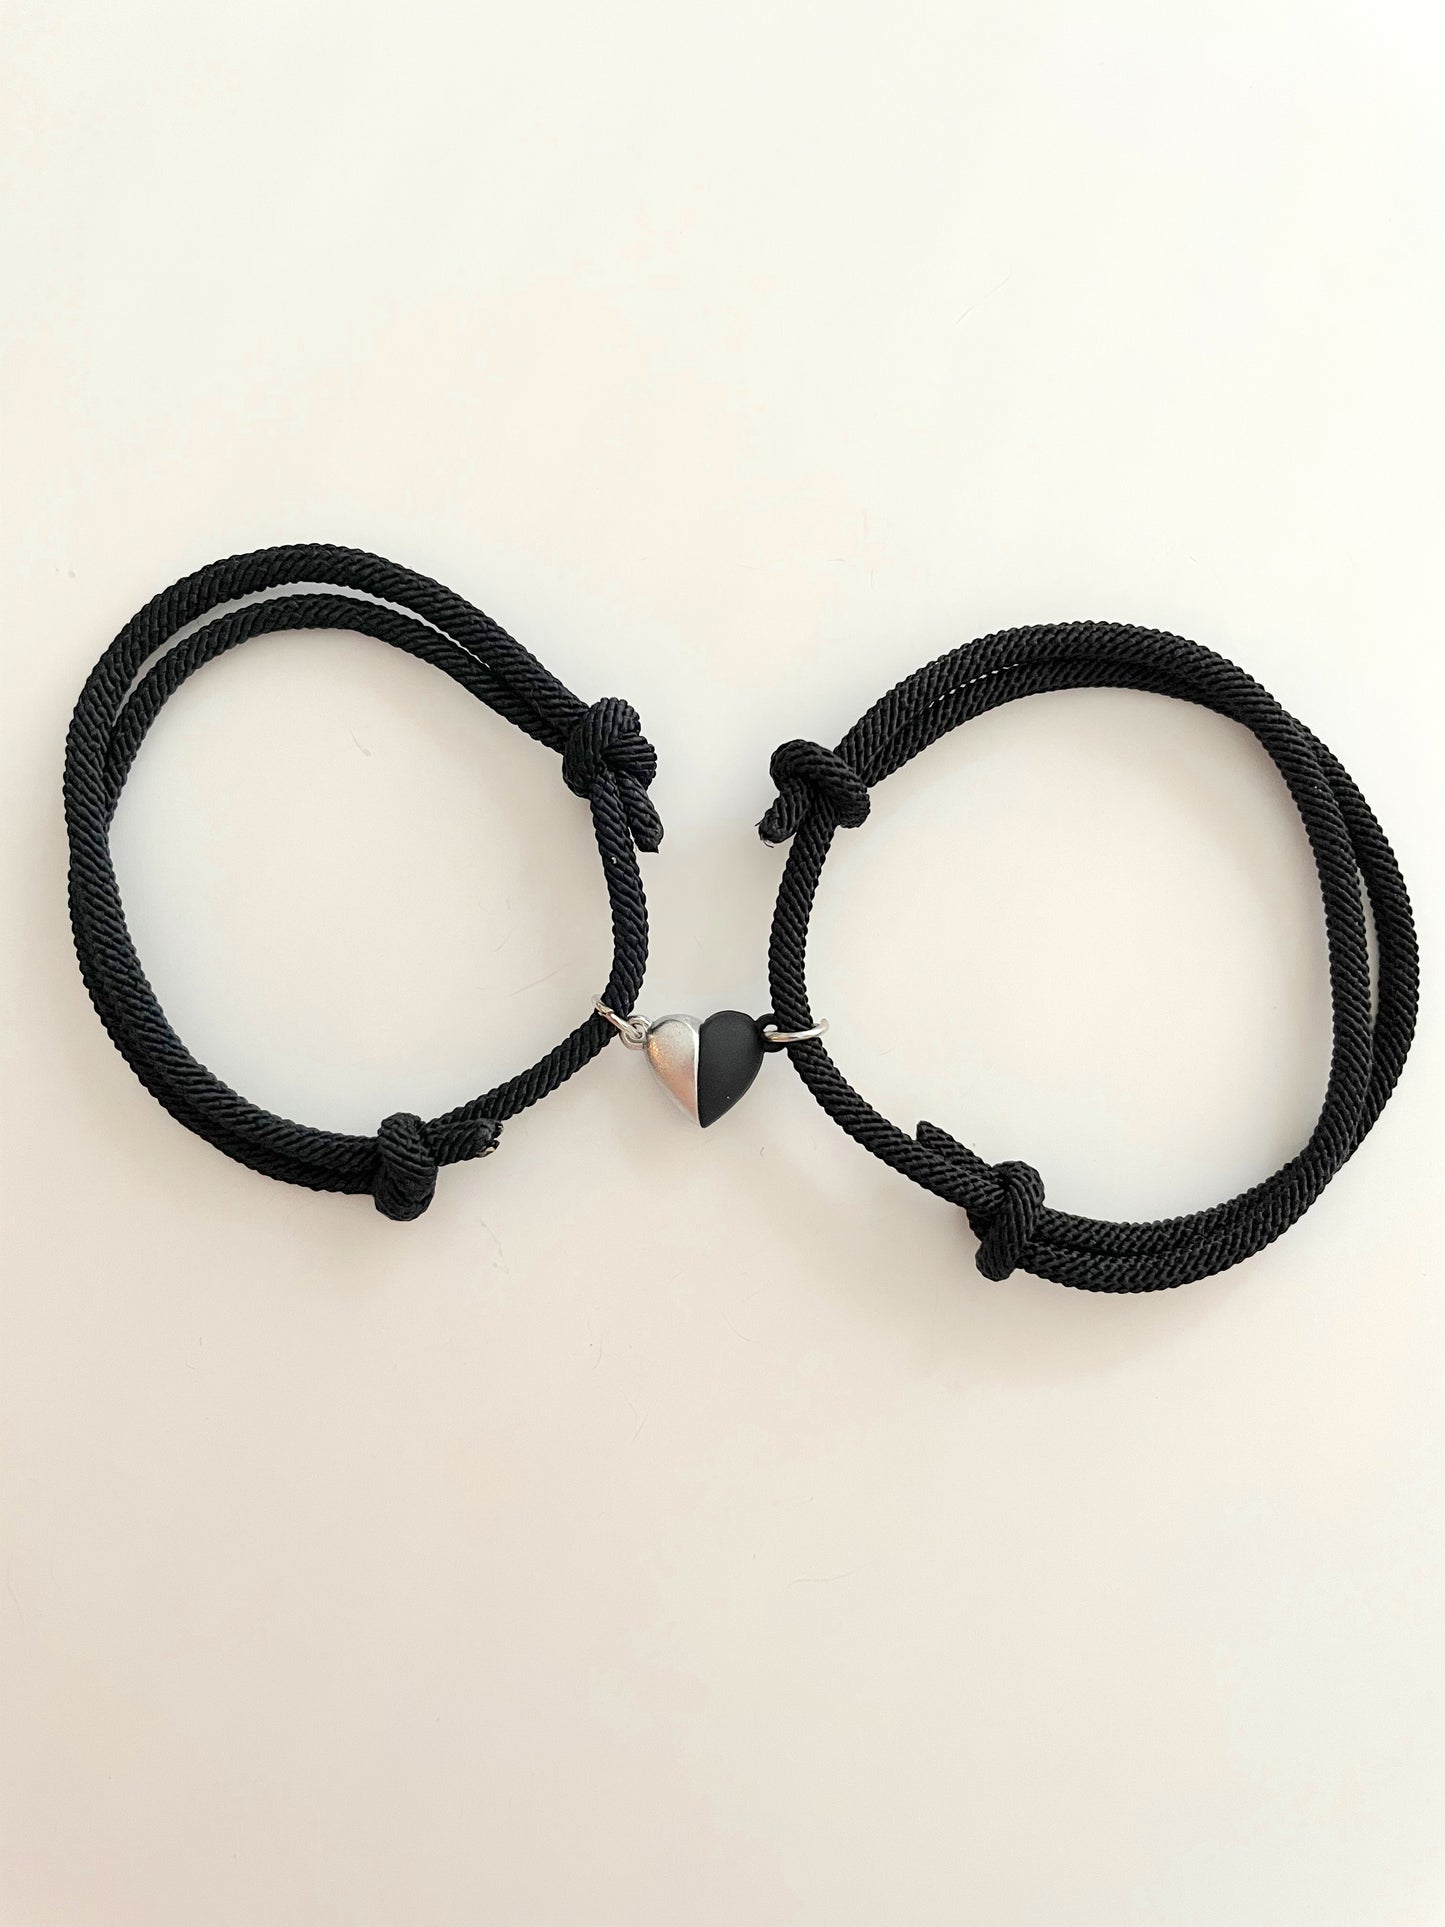 Magnet heart bracelets pair